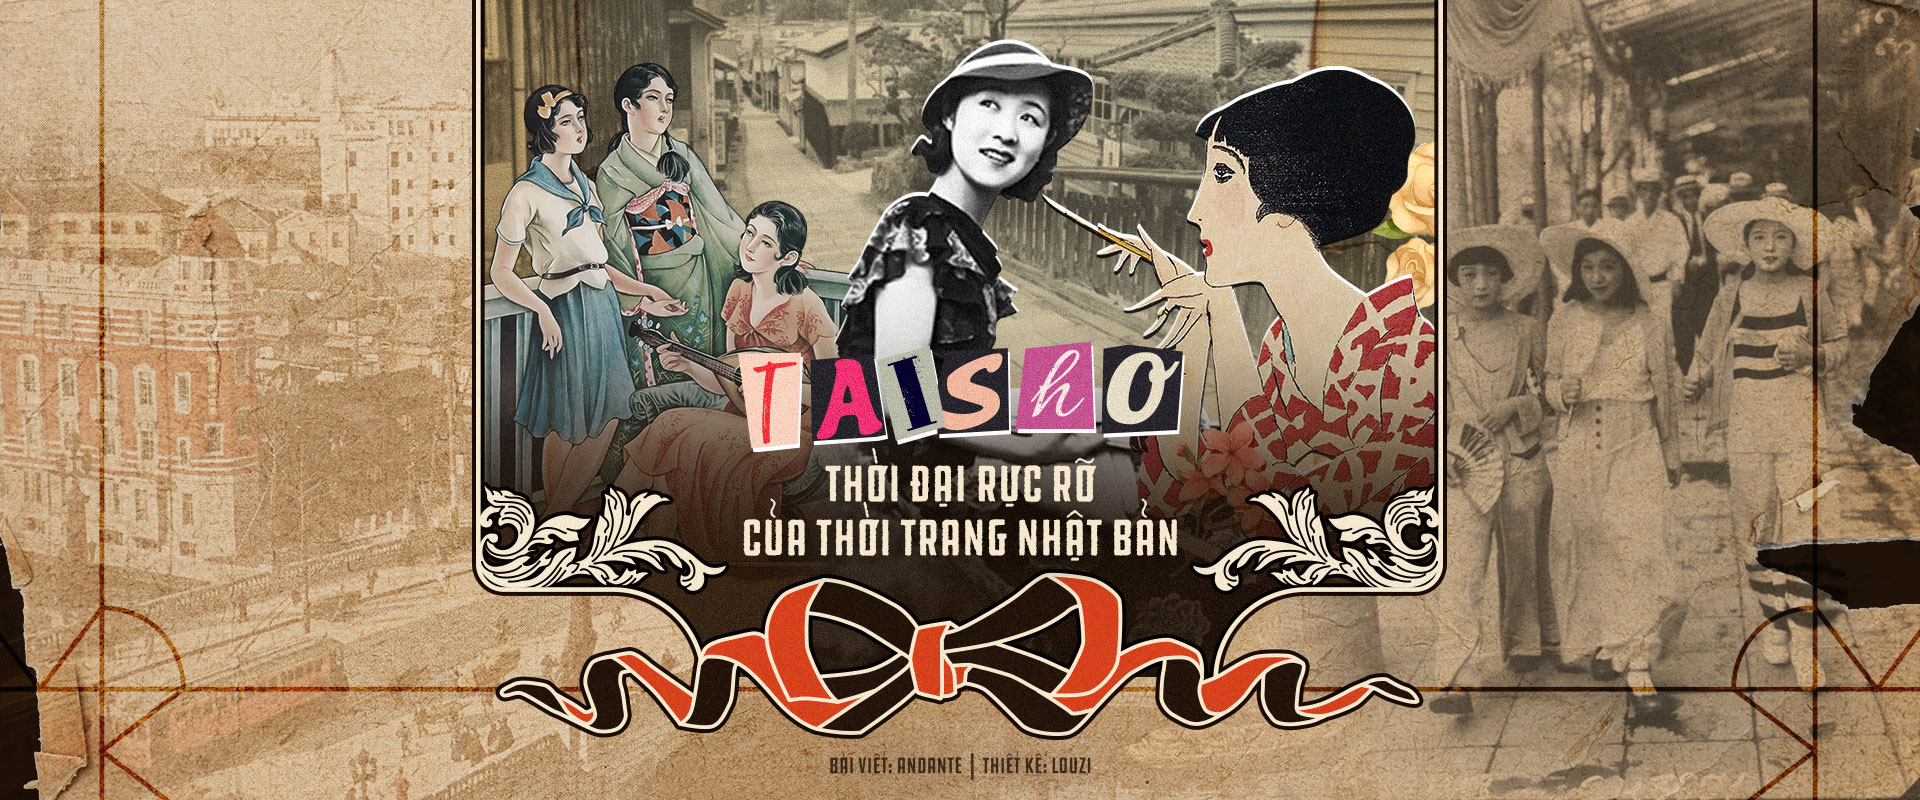 Taisho: Thời đại rực rỡ của thời trang Nhật Bản.